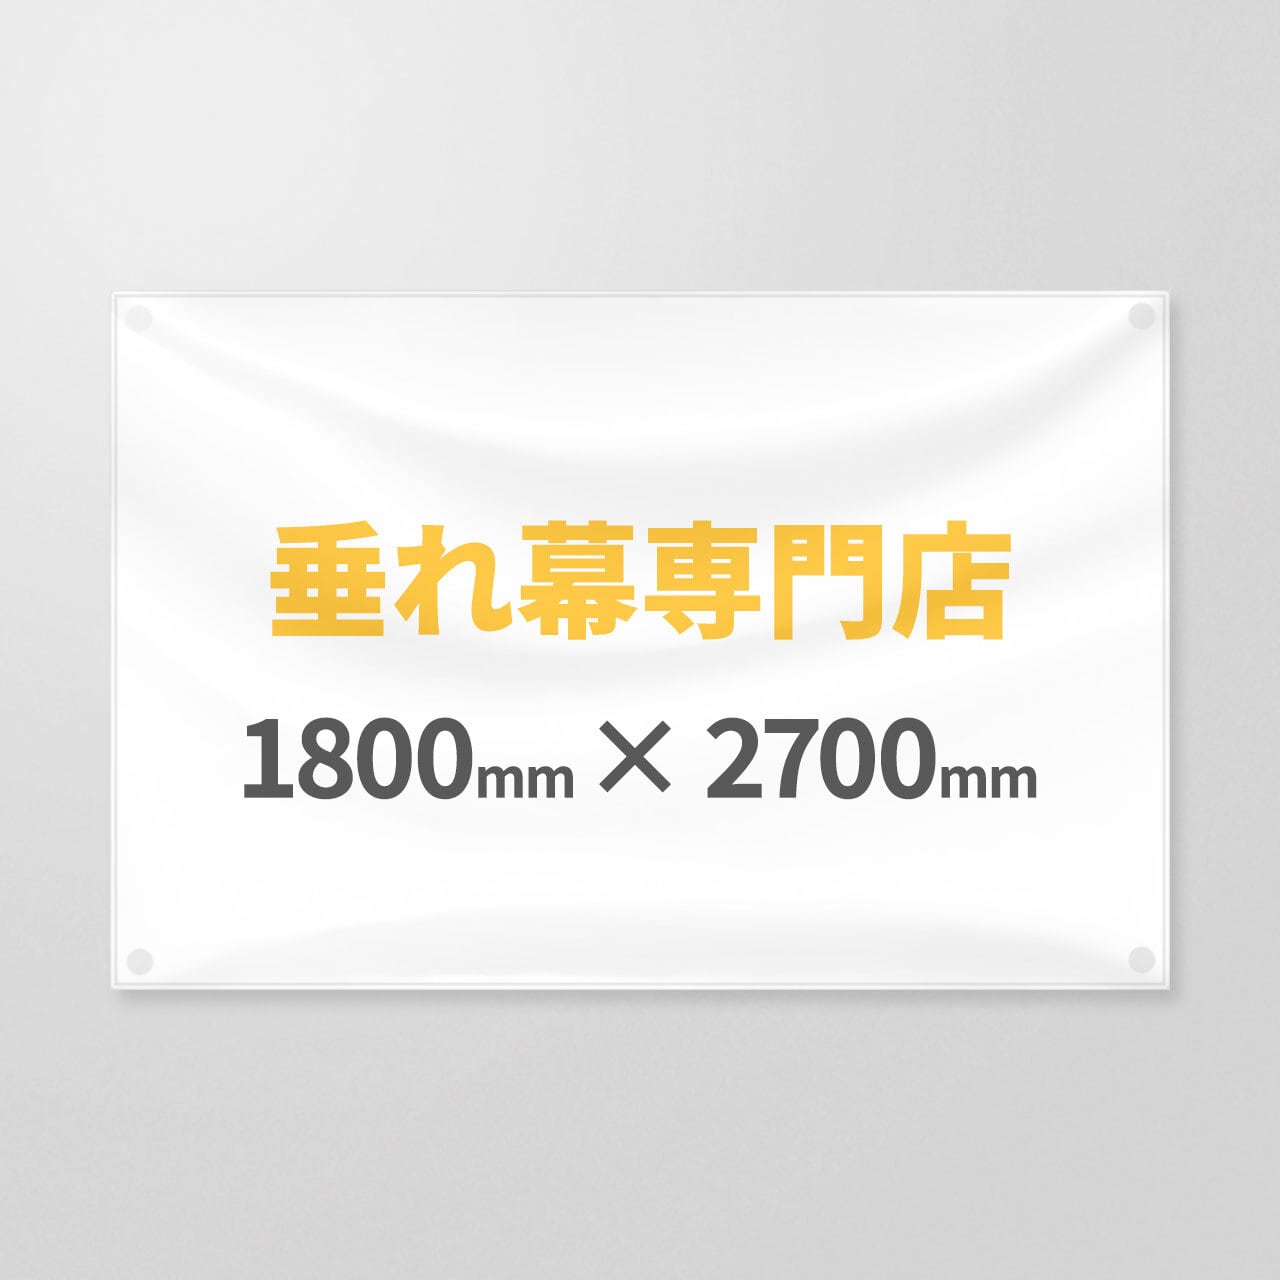 垂れ幕 1800×2700(mm) 垂れ幕専門店